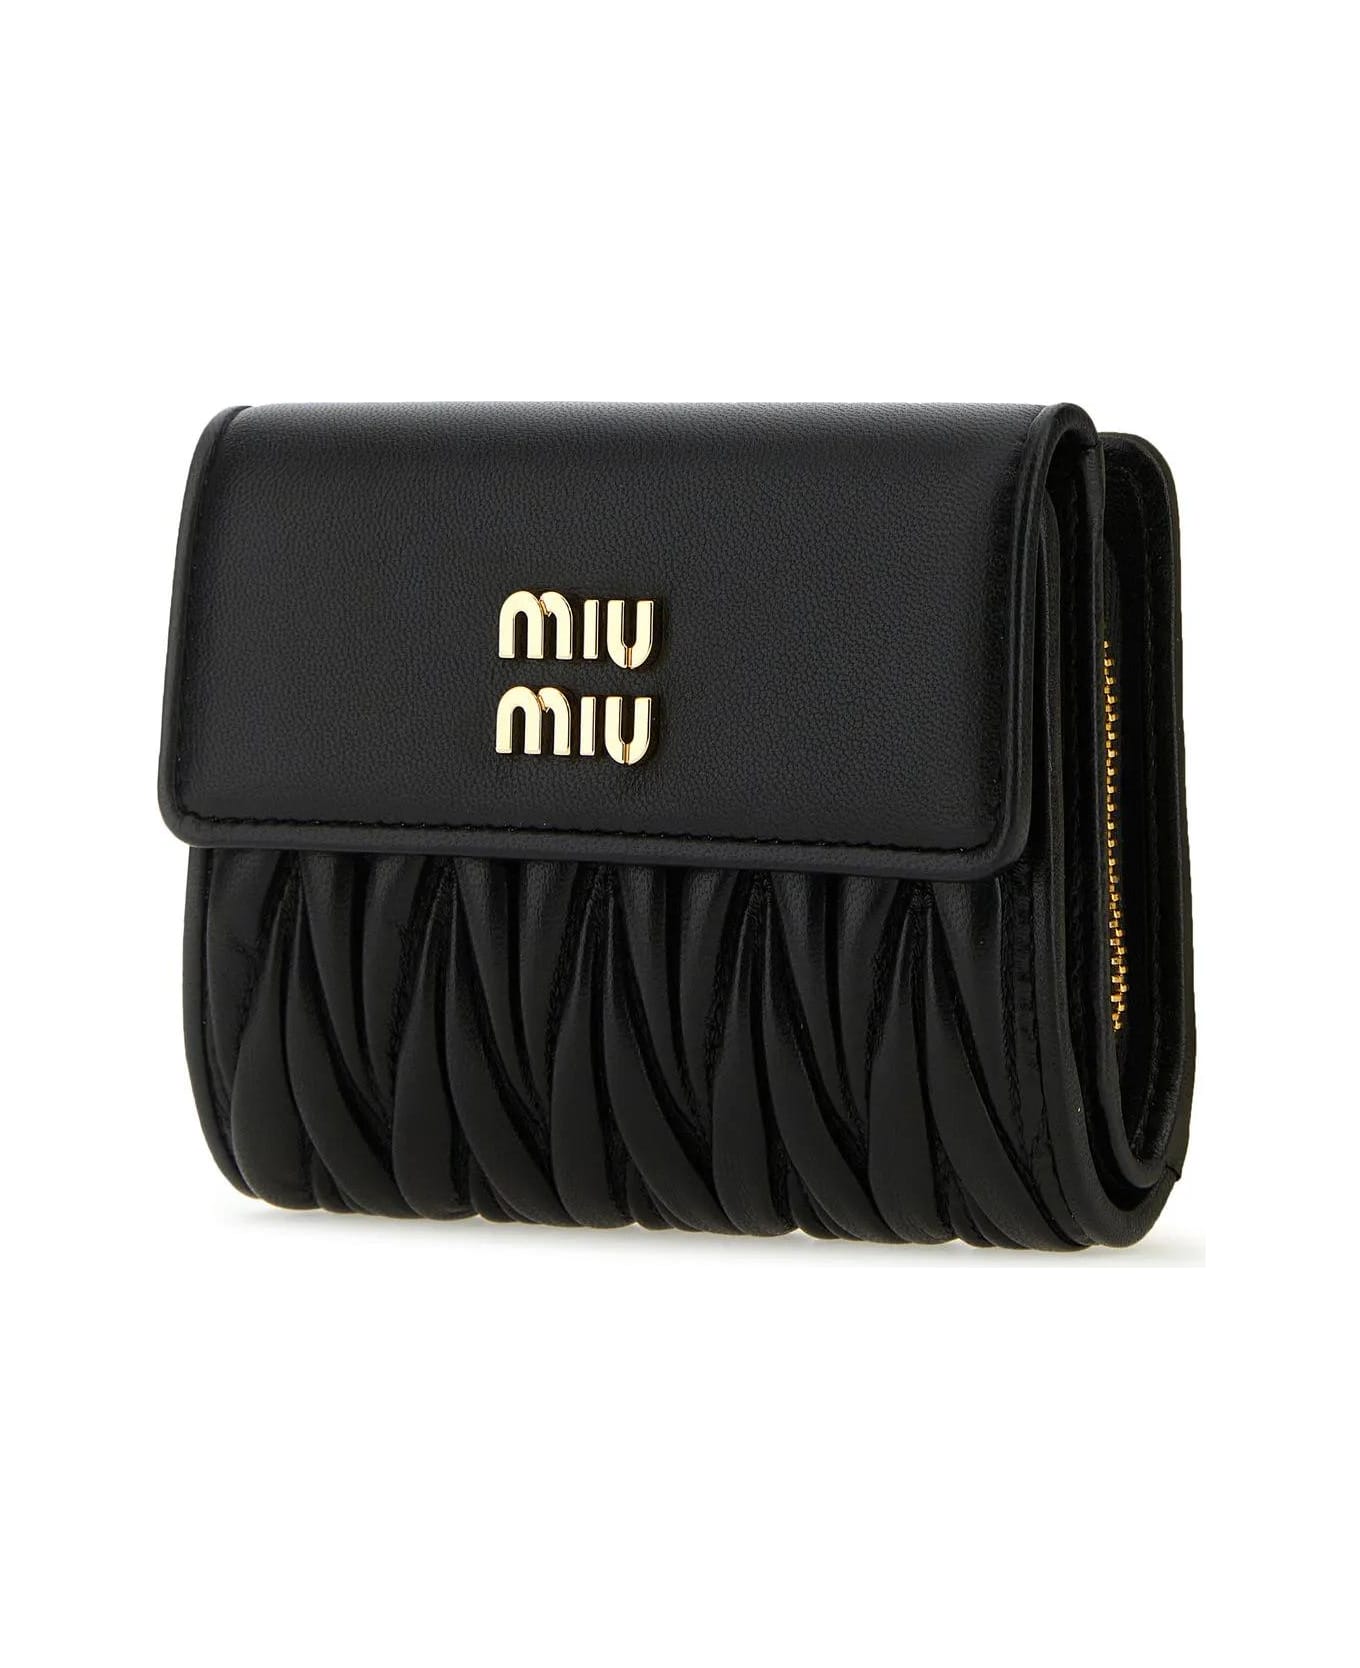 Miu Miu Black Leather Wallet - Nero